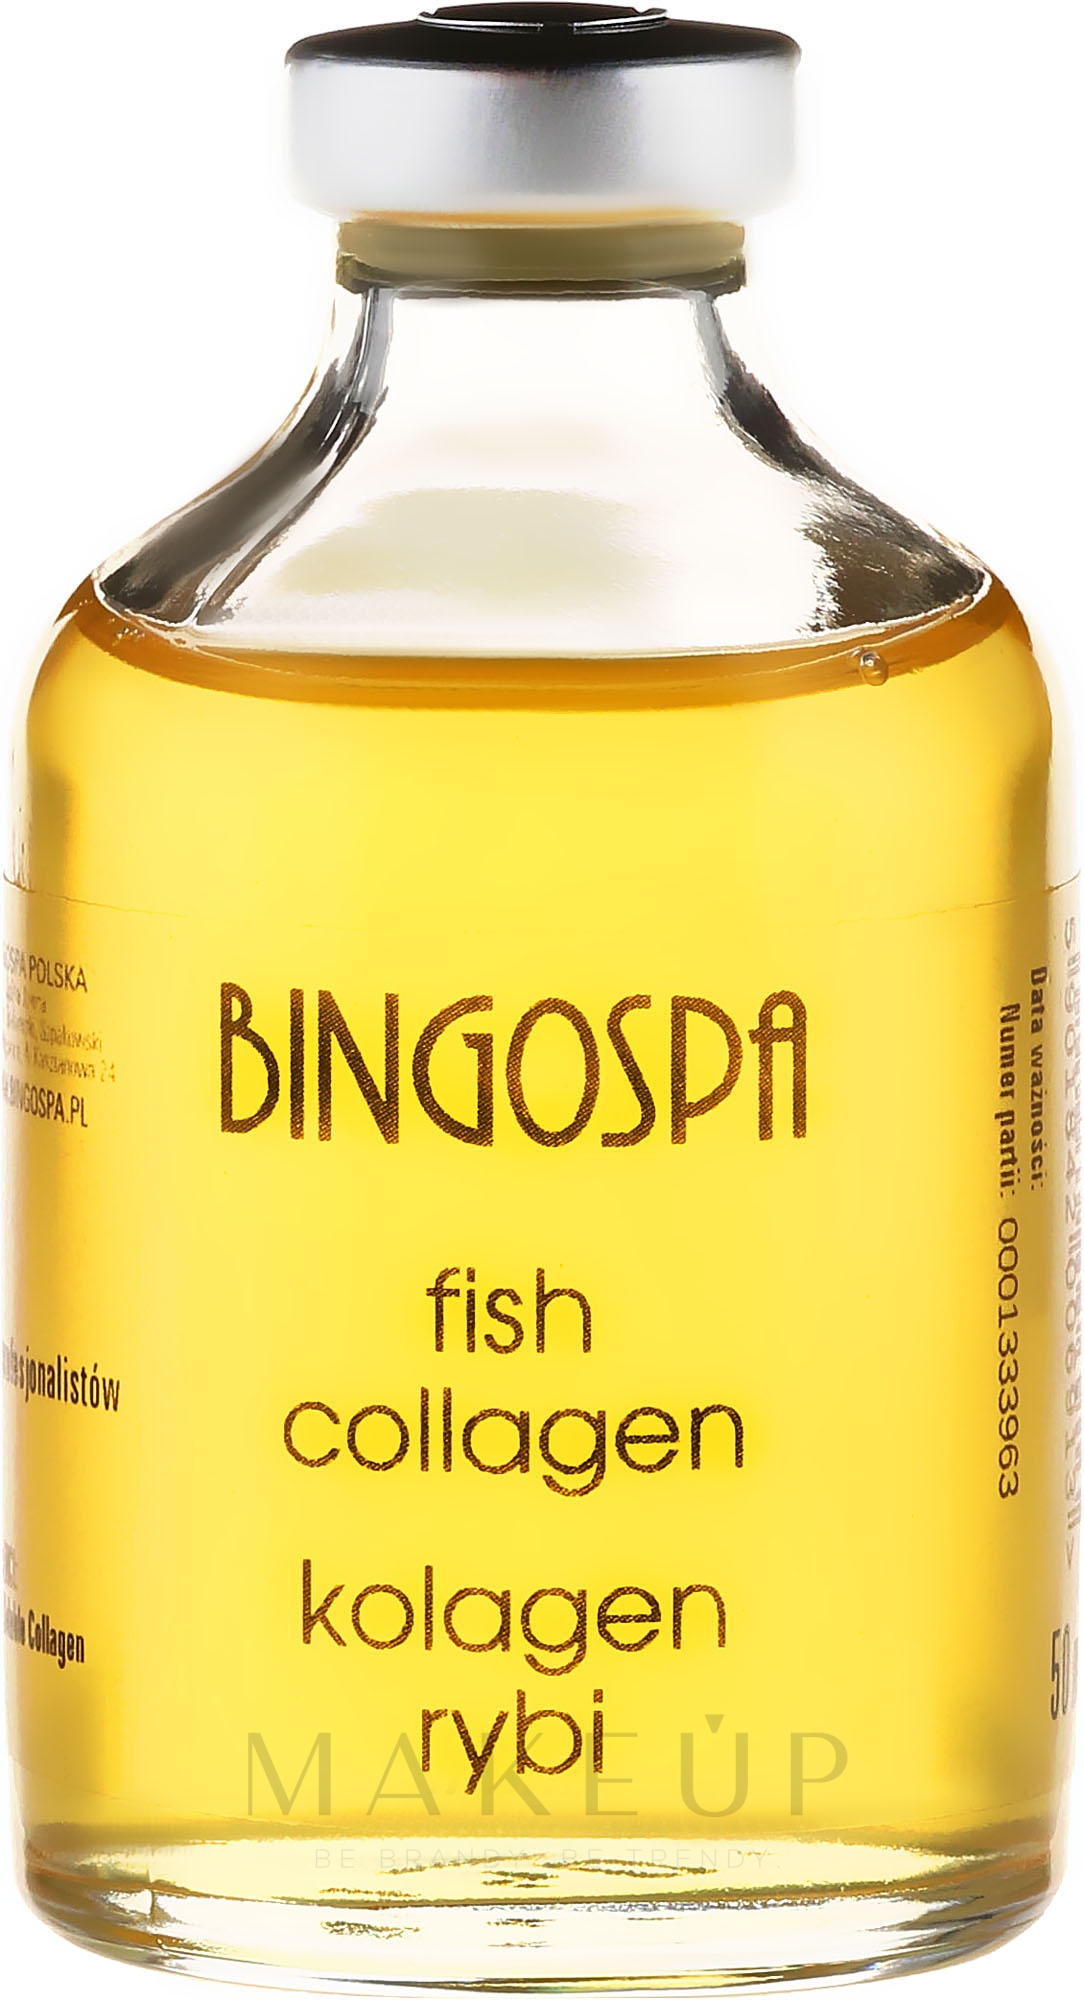 Fischkollagen - Bingospa Fish Collagen — Bild 50 ml